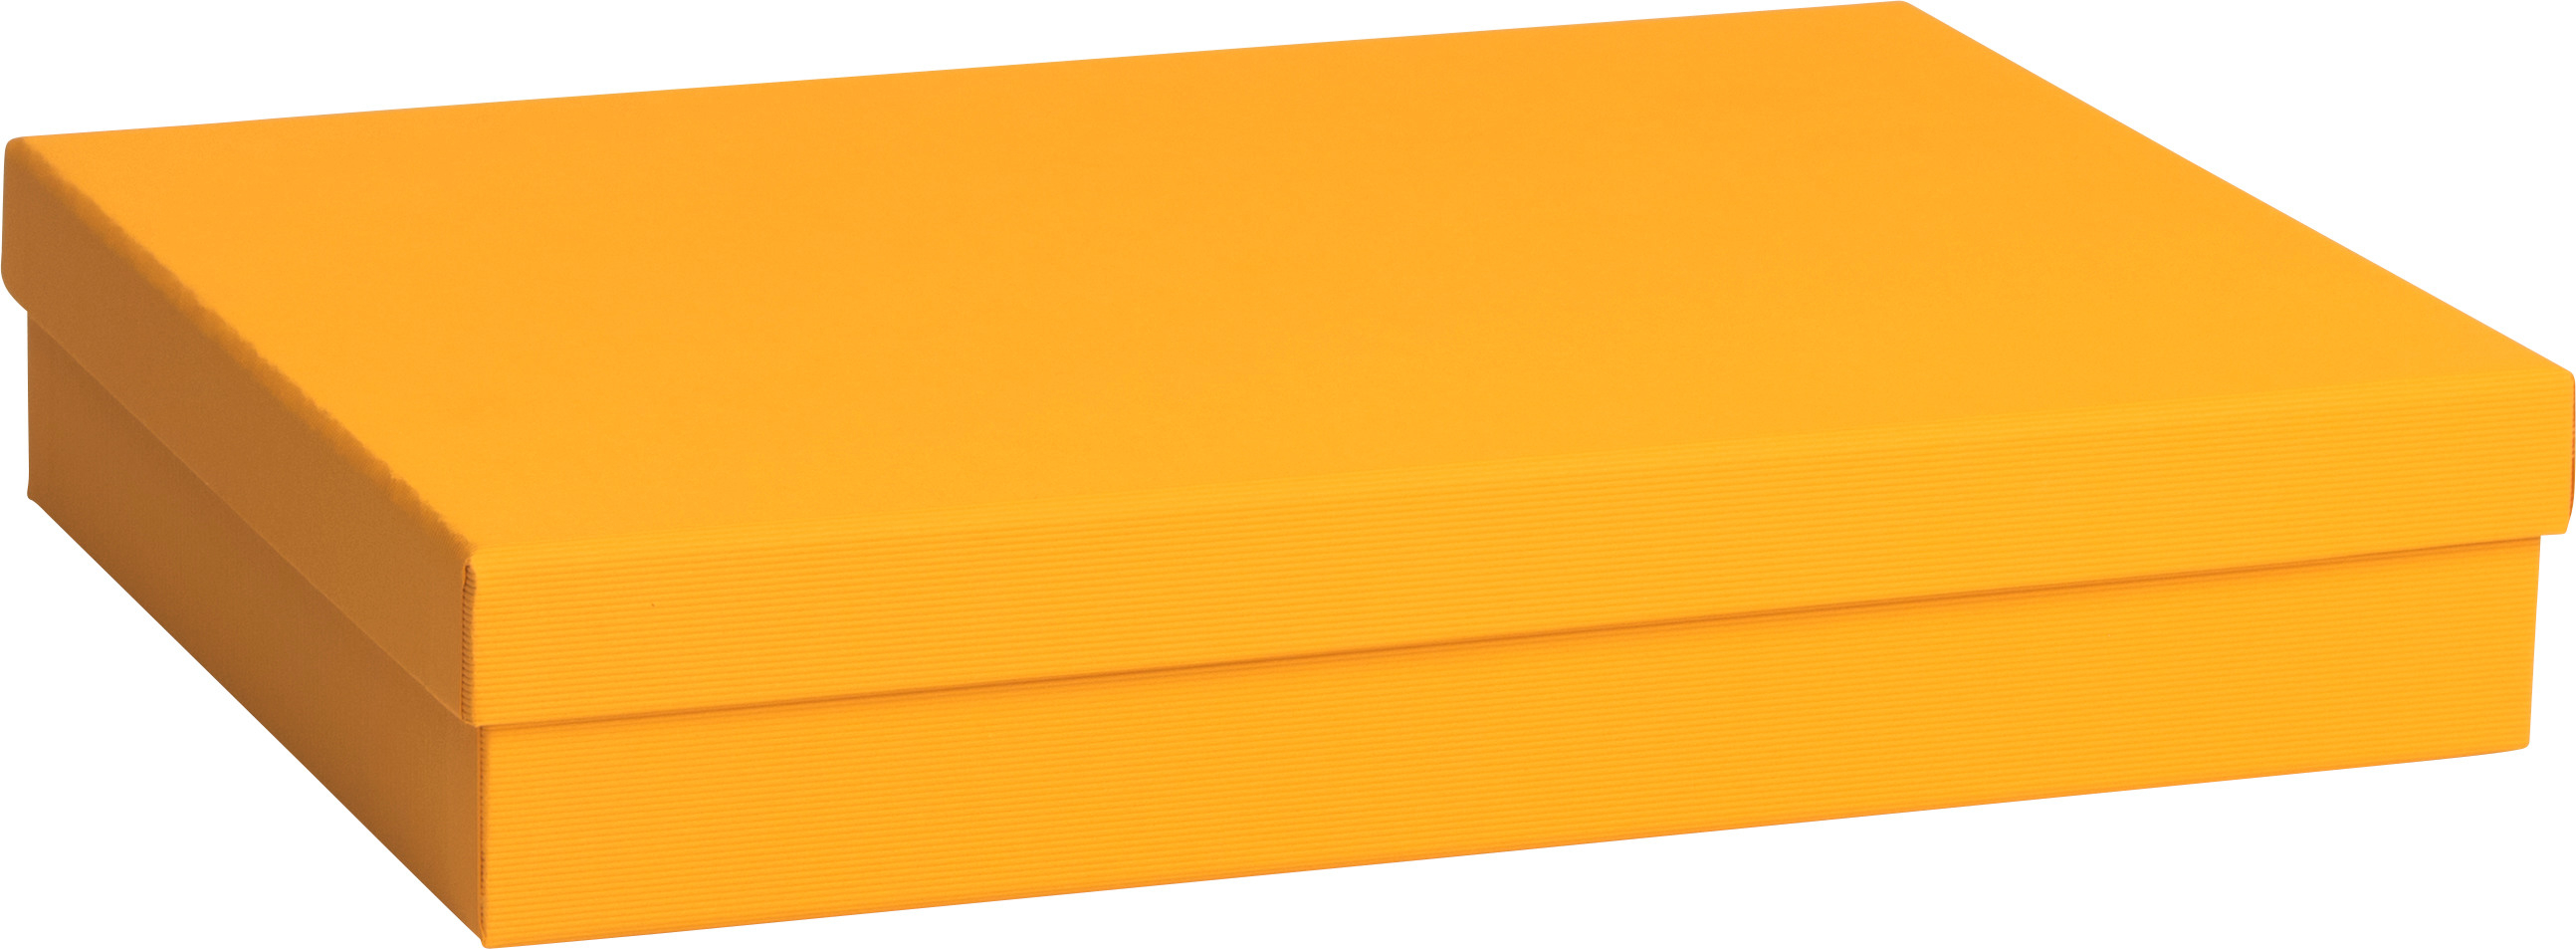 STEWO Geschenkbox One Colour 2551784593 orange dunkel 24x33x6cm